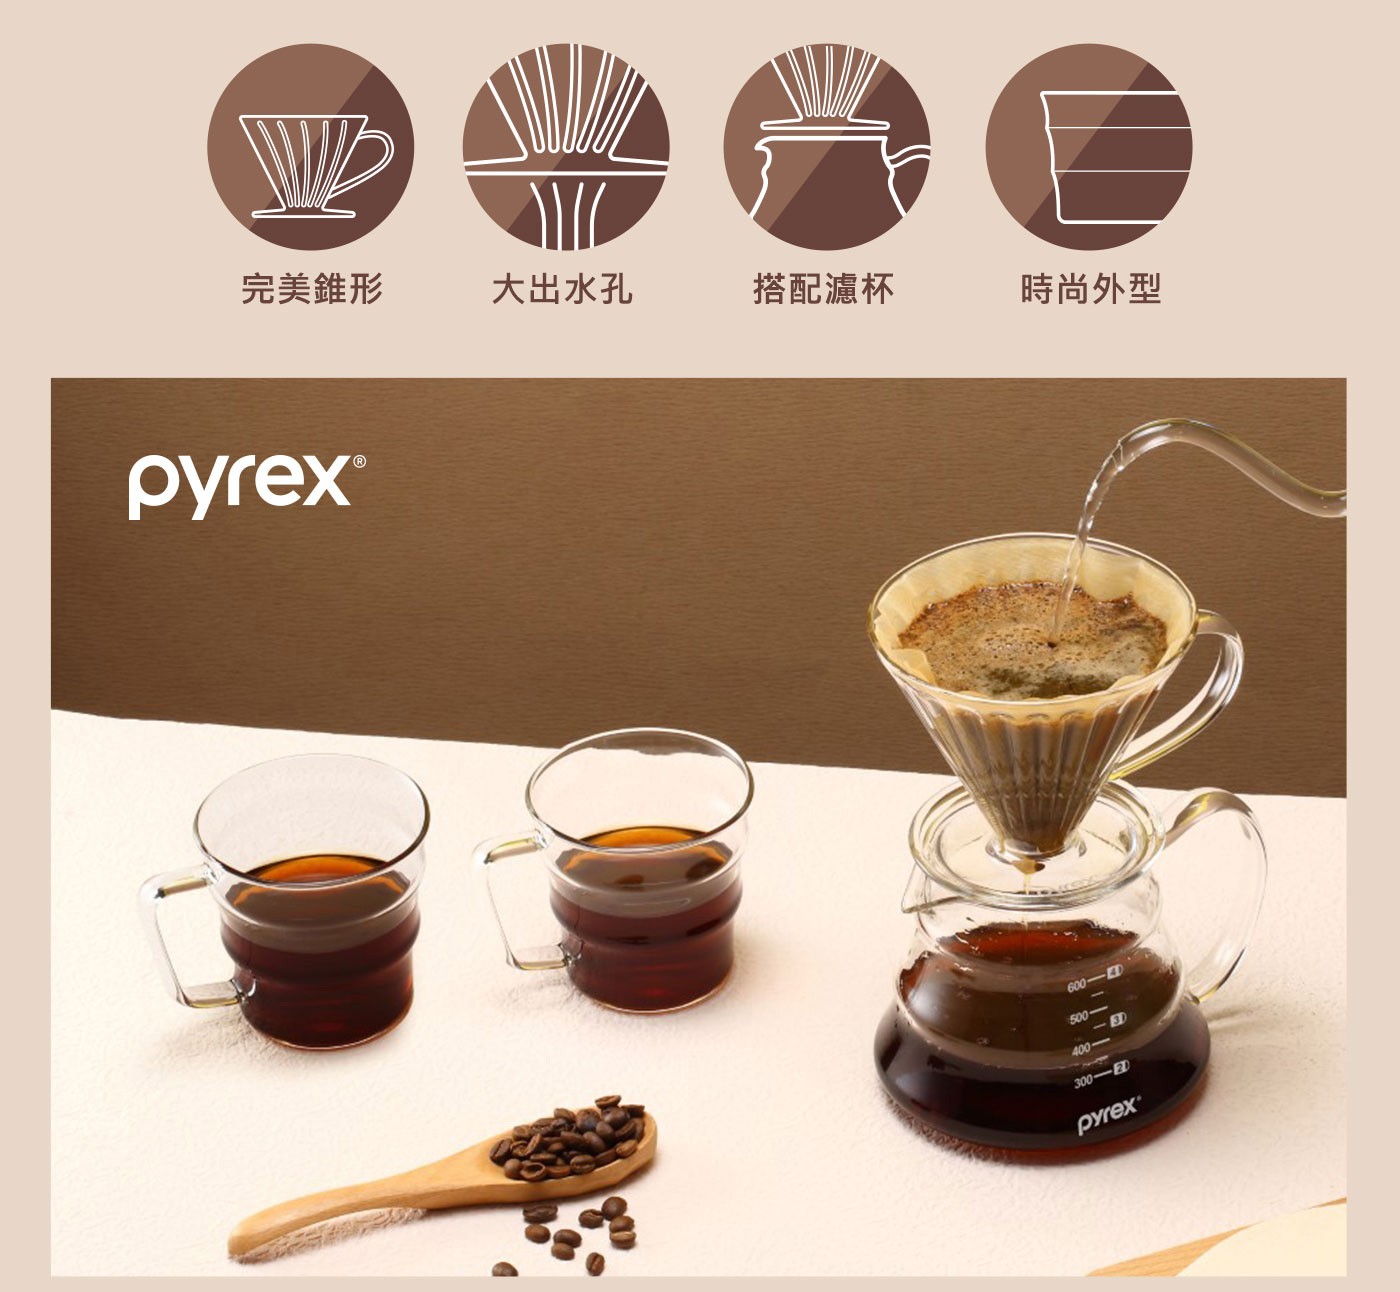 美國康寧Pyrex Cafe咖啡壺700ml+玻璃濾杯，耐熱玻璃材質耐熱400°C，獨特外型，可搭配濾杯使用。